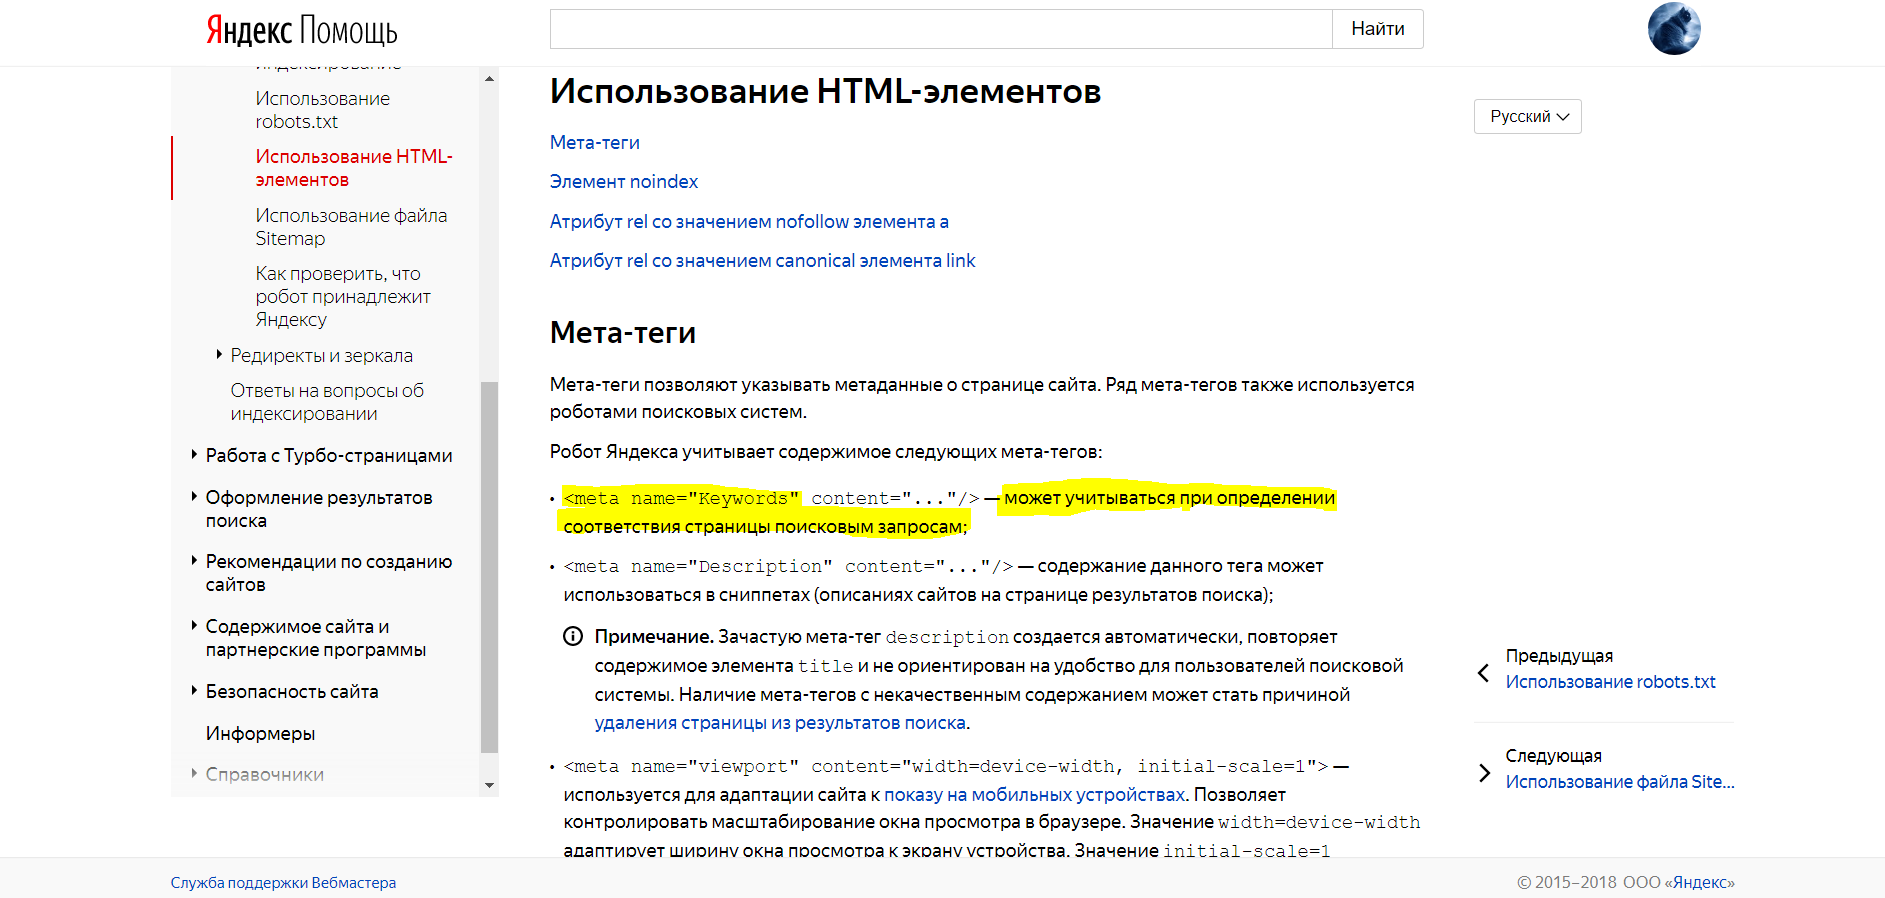 Meta keywords все еще используются в Яндексе